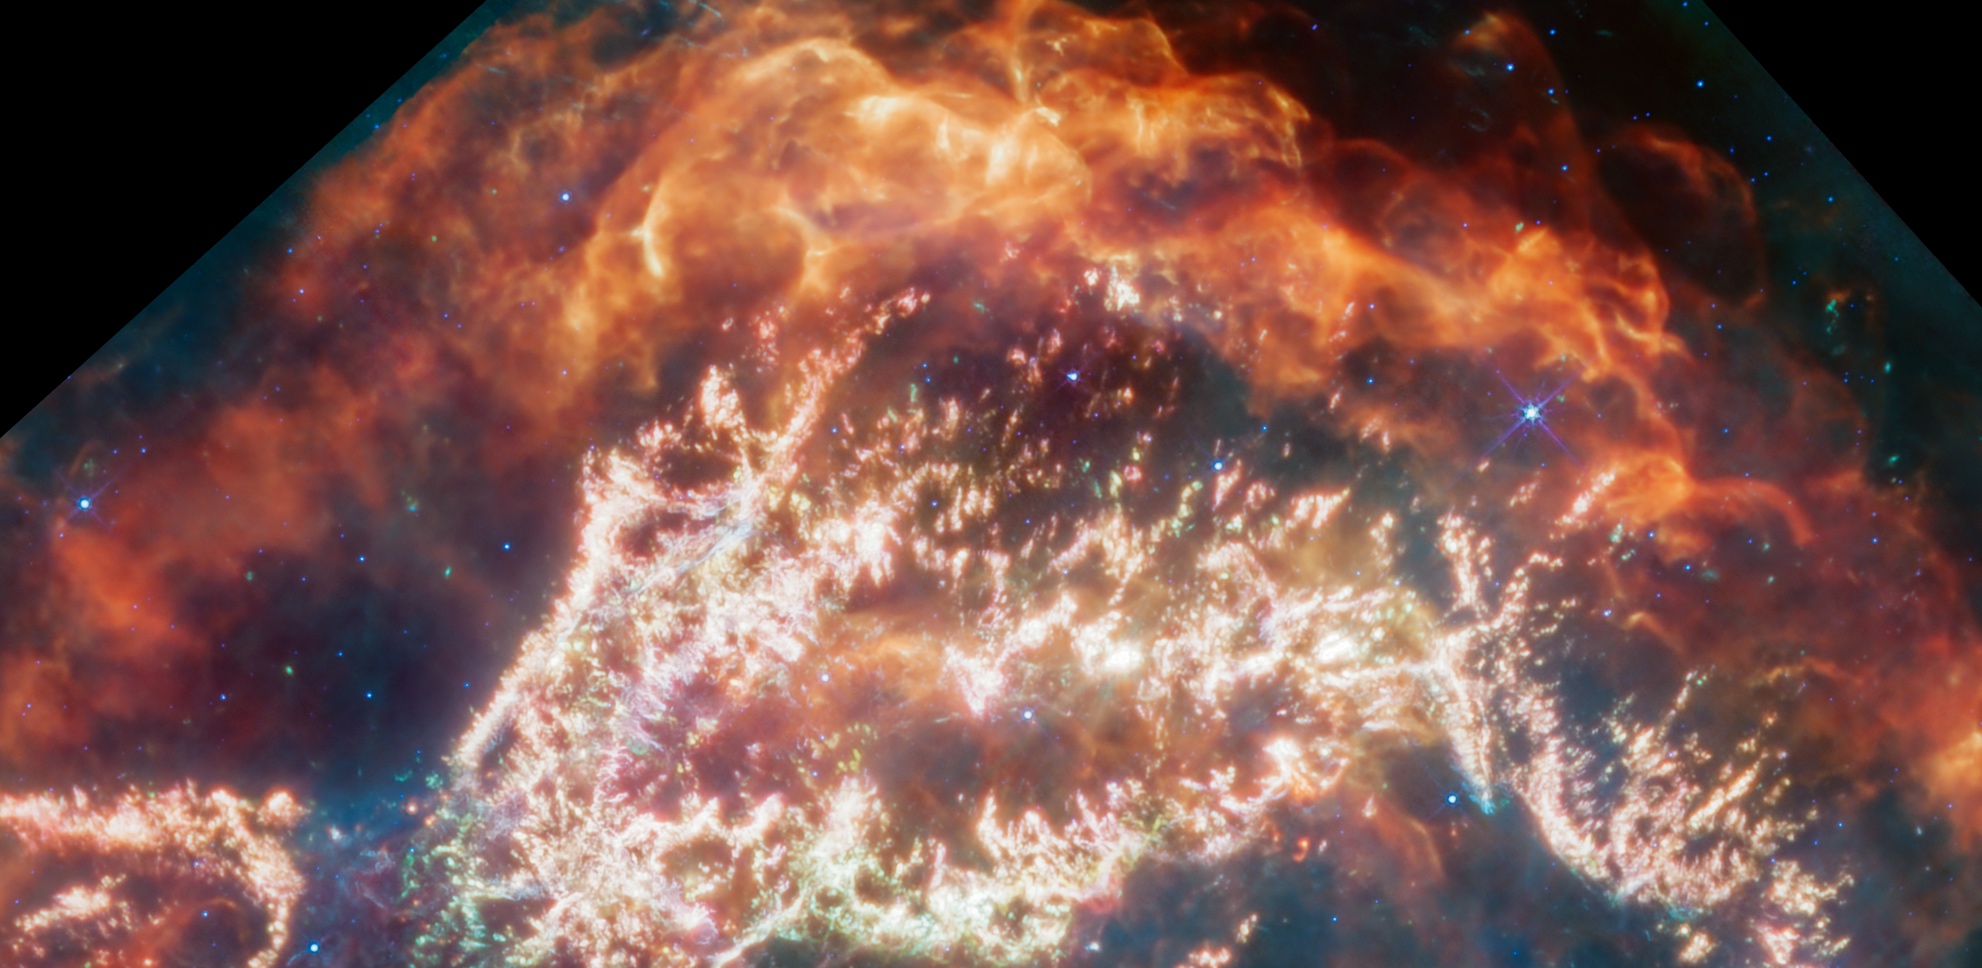 Détail des restes de la supernova Cassiopée A, une nébuleuse circulaire à la structure complexe. © Nasa, ESA, CSA, D. Milisavljevic (Purdue University), T. Temim (Princeton University), I. De Looze (UGent), J. DePasquale (STScI)